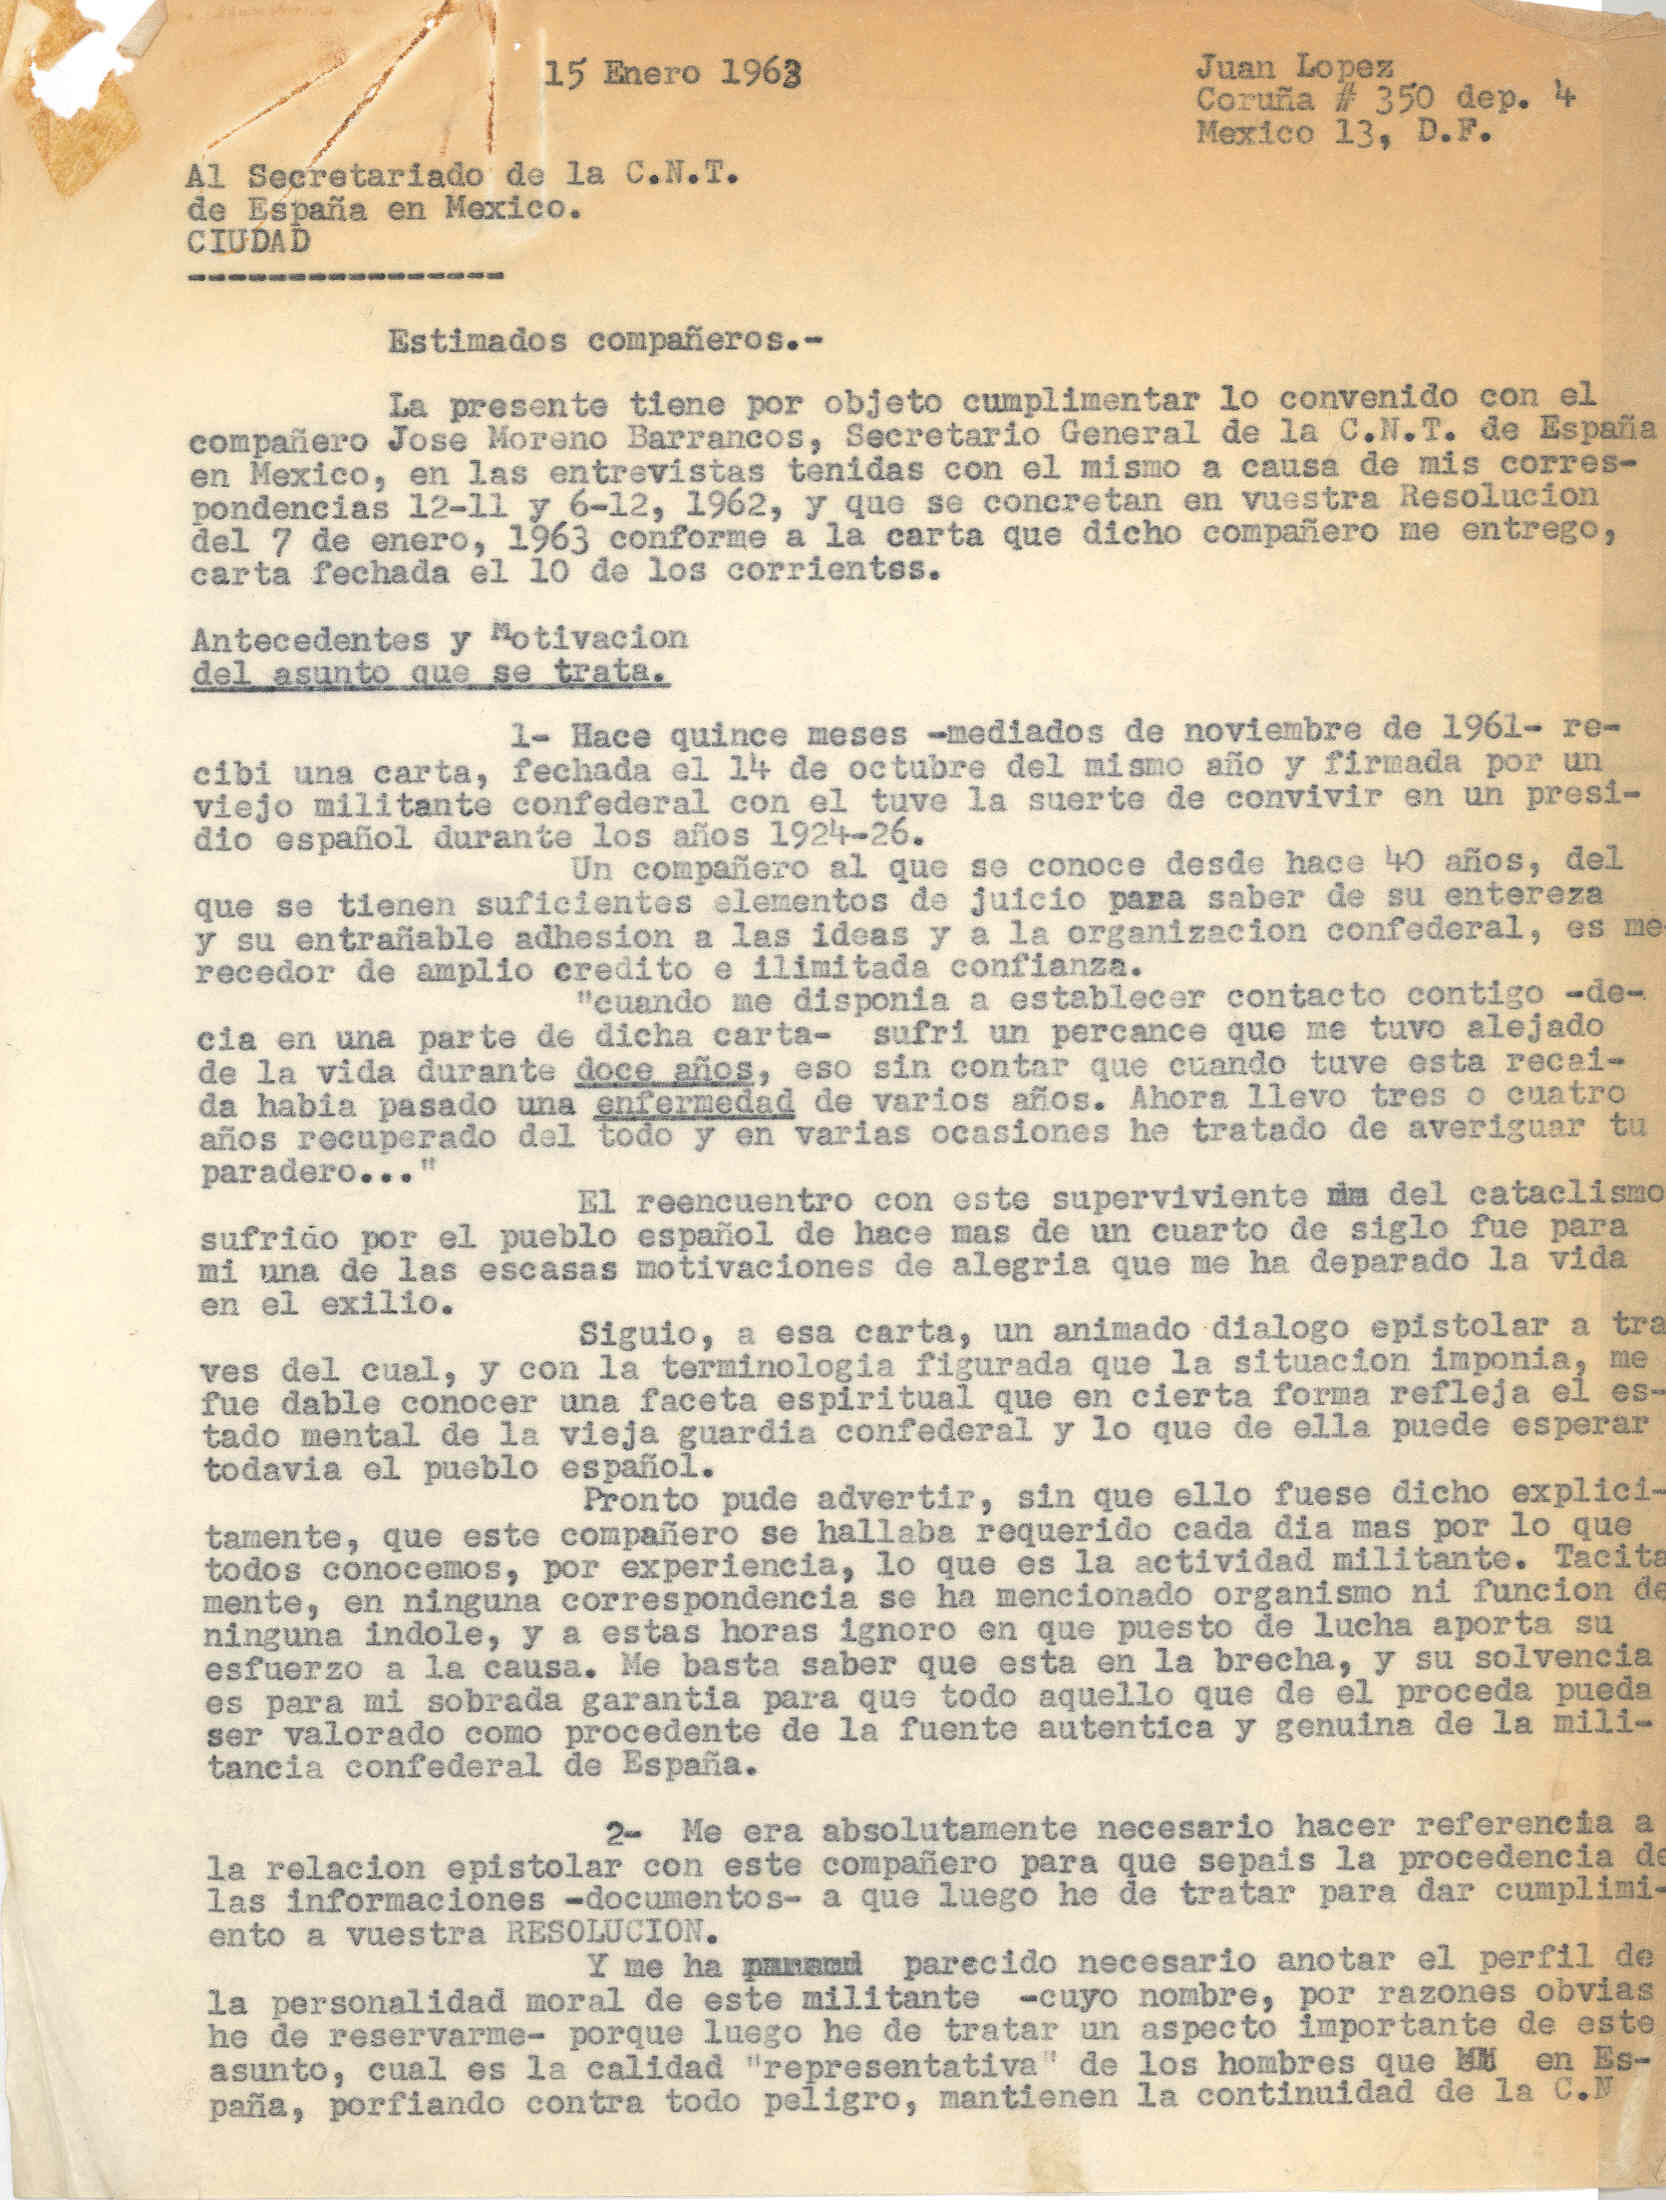 Carta al Secretariado de la C.N.T. de España en México en la que habla de la reorganización del Comité Nacional de CNT y de algunos acontecimientos de la CNT en el exilio.